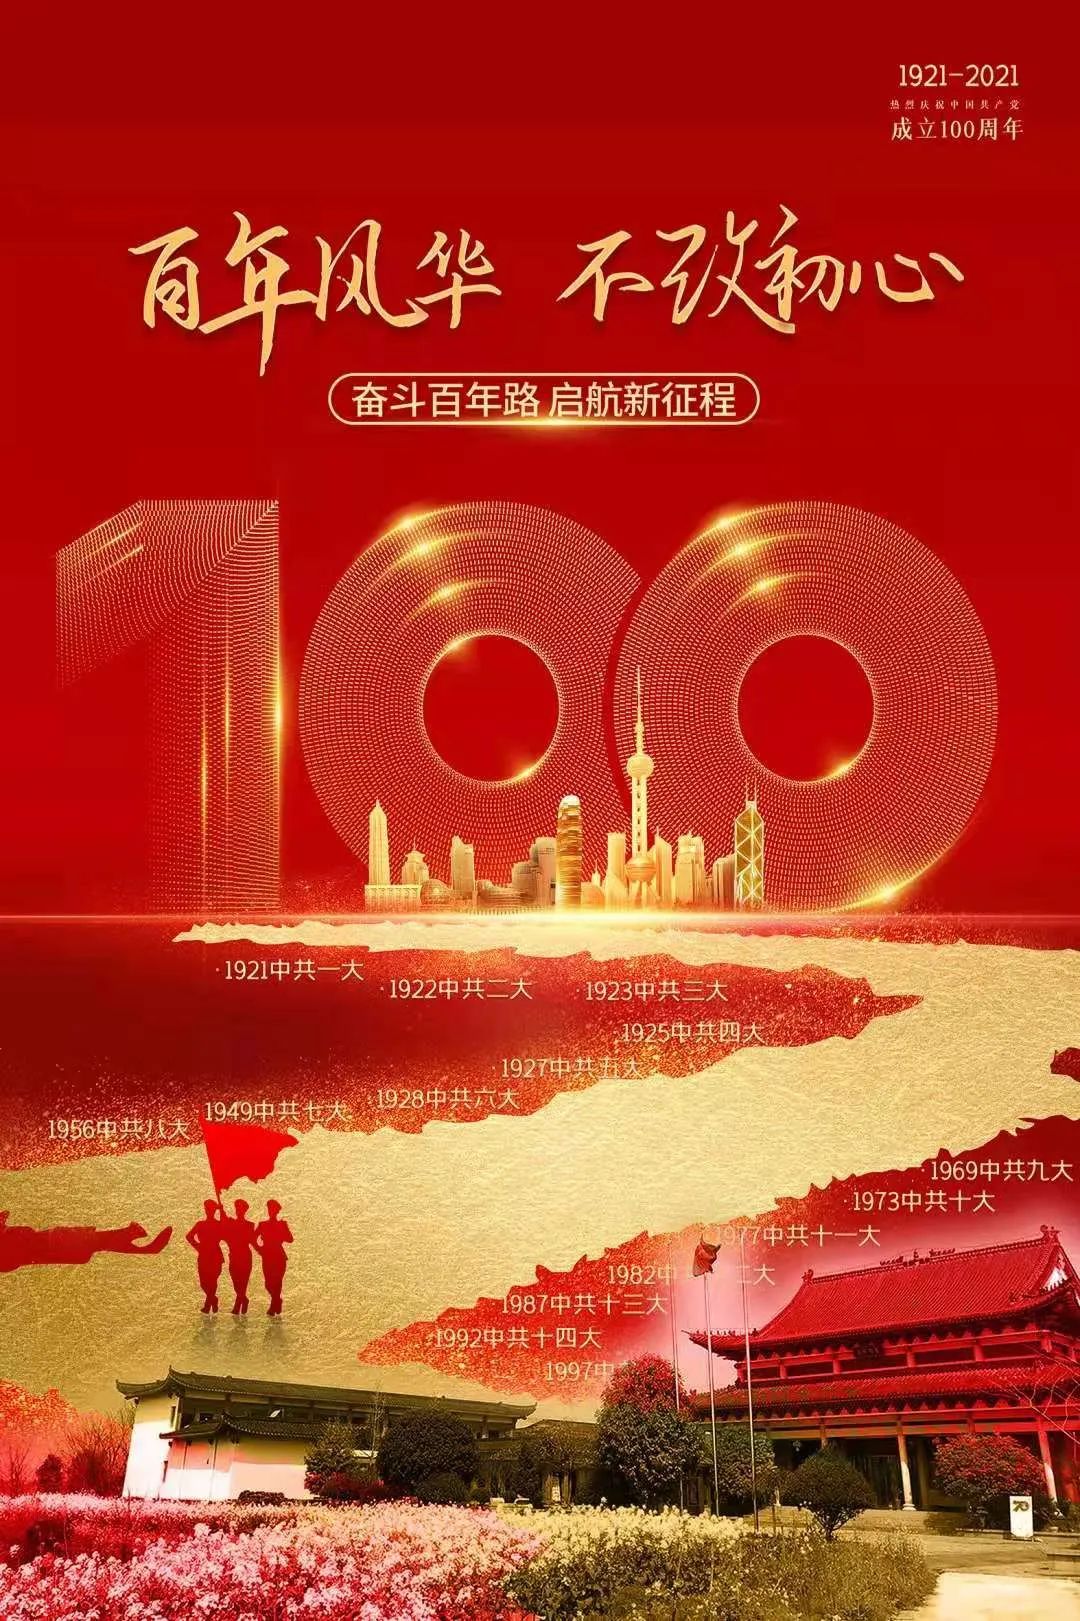 百年华诞 举国同庆 | 苏州寒山寺庆祝中国共产党成立100周年